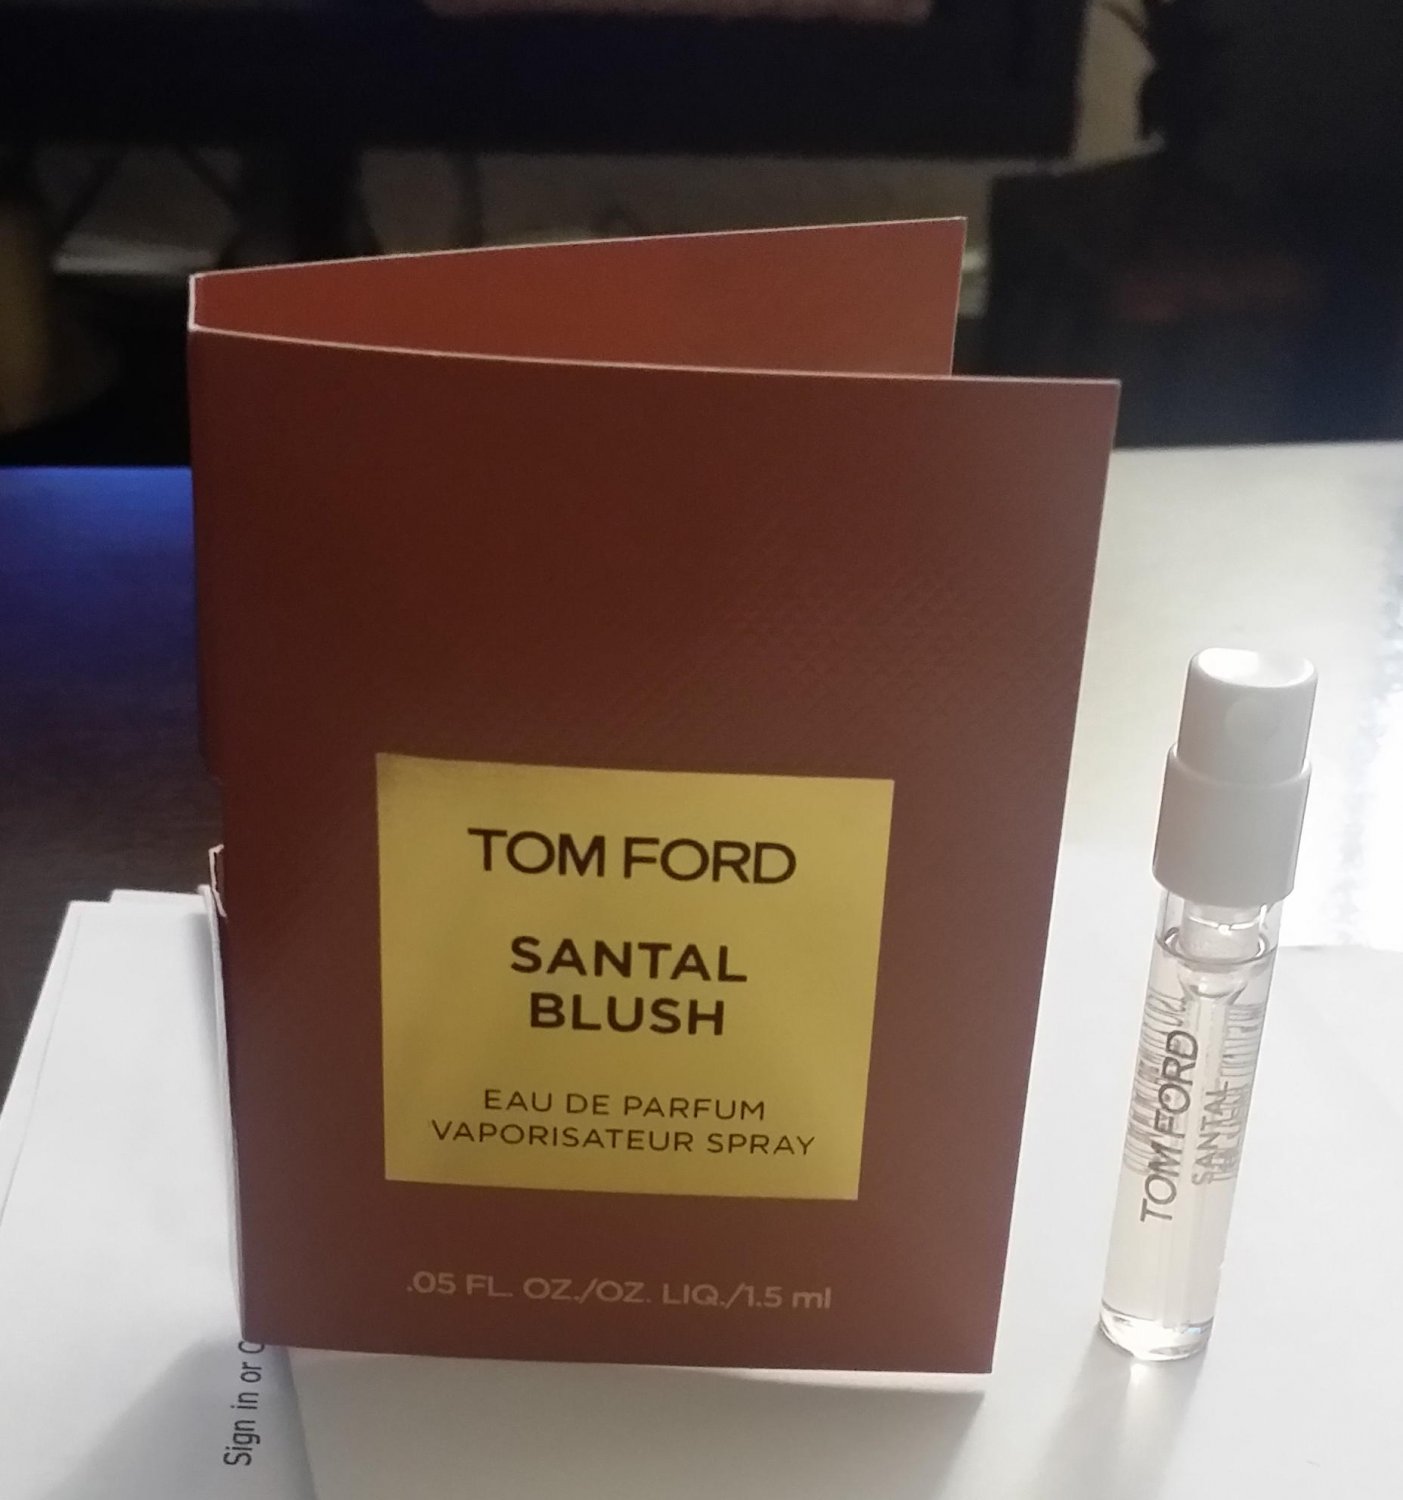 Tom Ford Private Blend 'Santal Blush' Eau de Parfum - 1.5 ml SAMPLE - BN